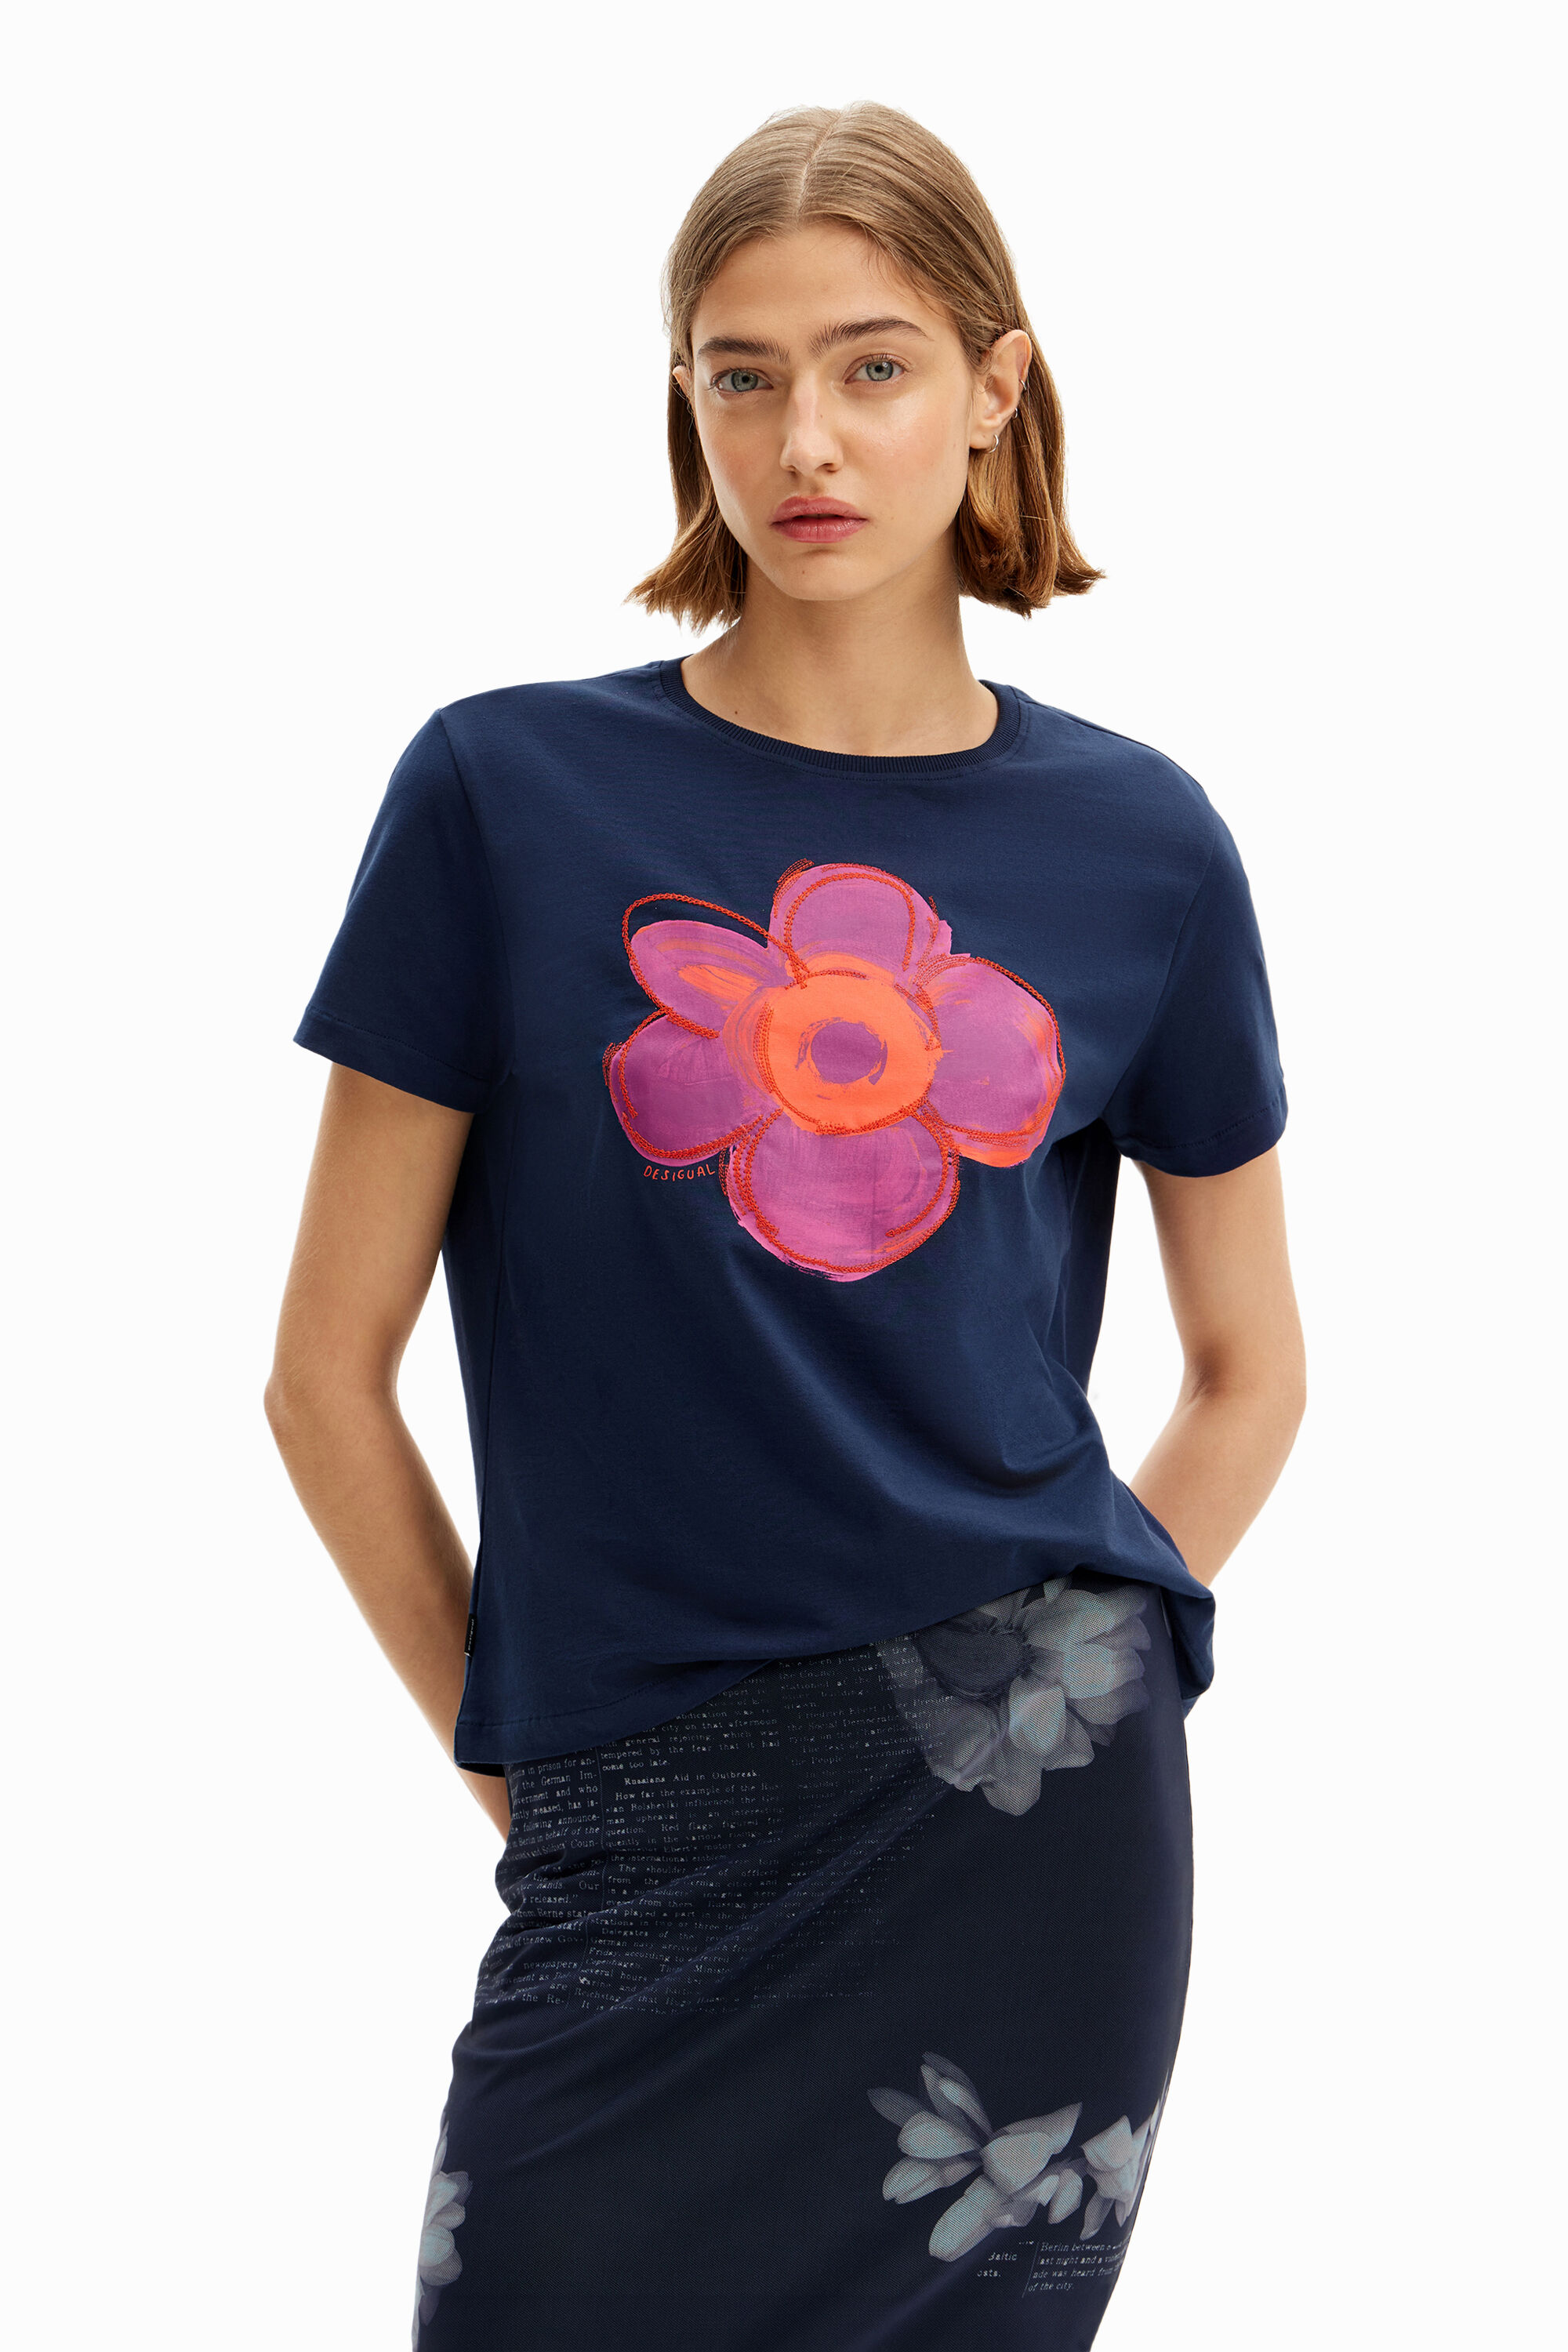 Flower illustration T-shirt - BLUE - M